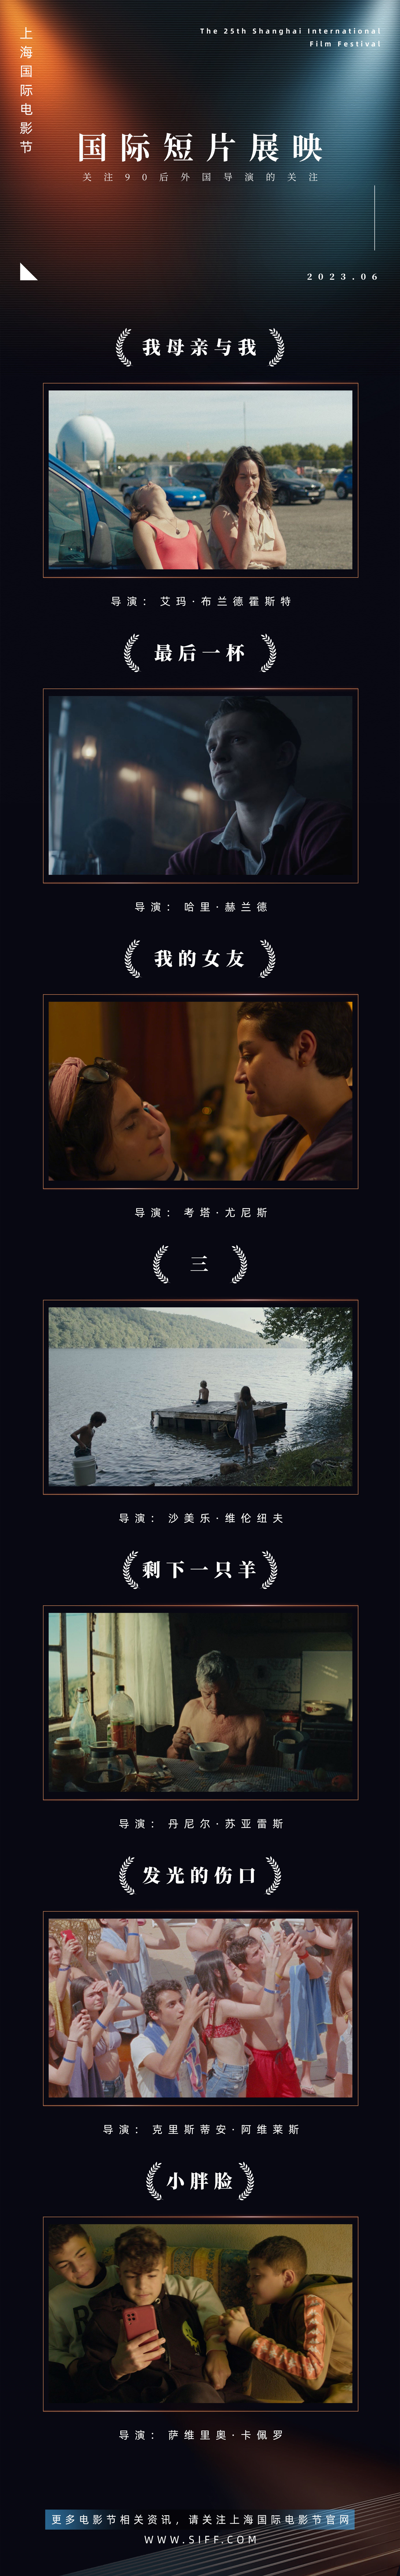 上海国际电影节发布国际短片展映片单